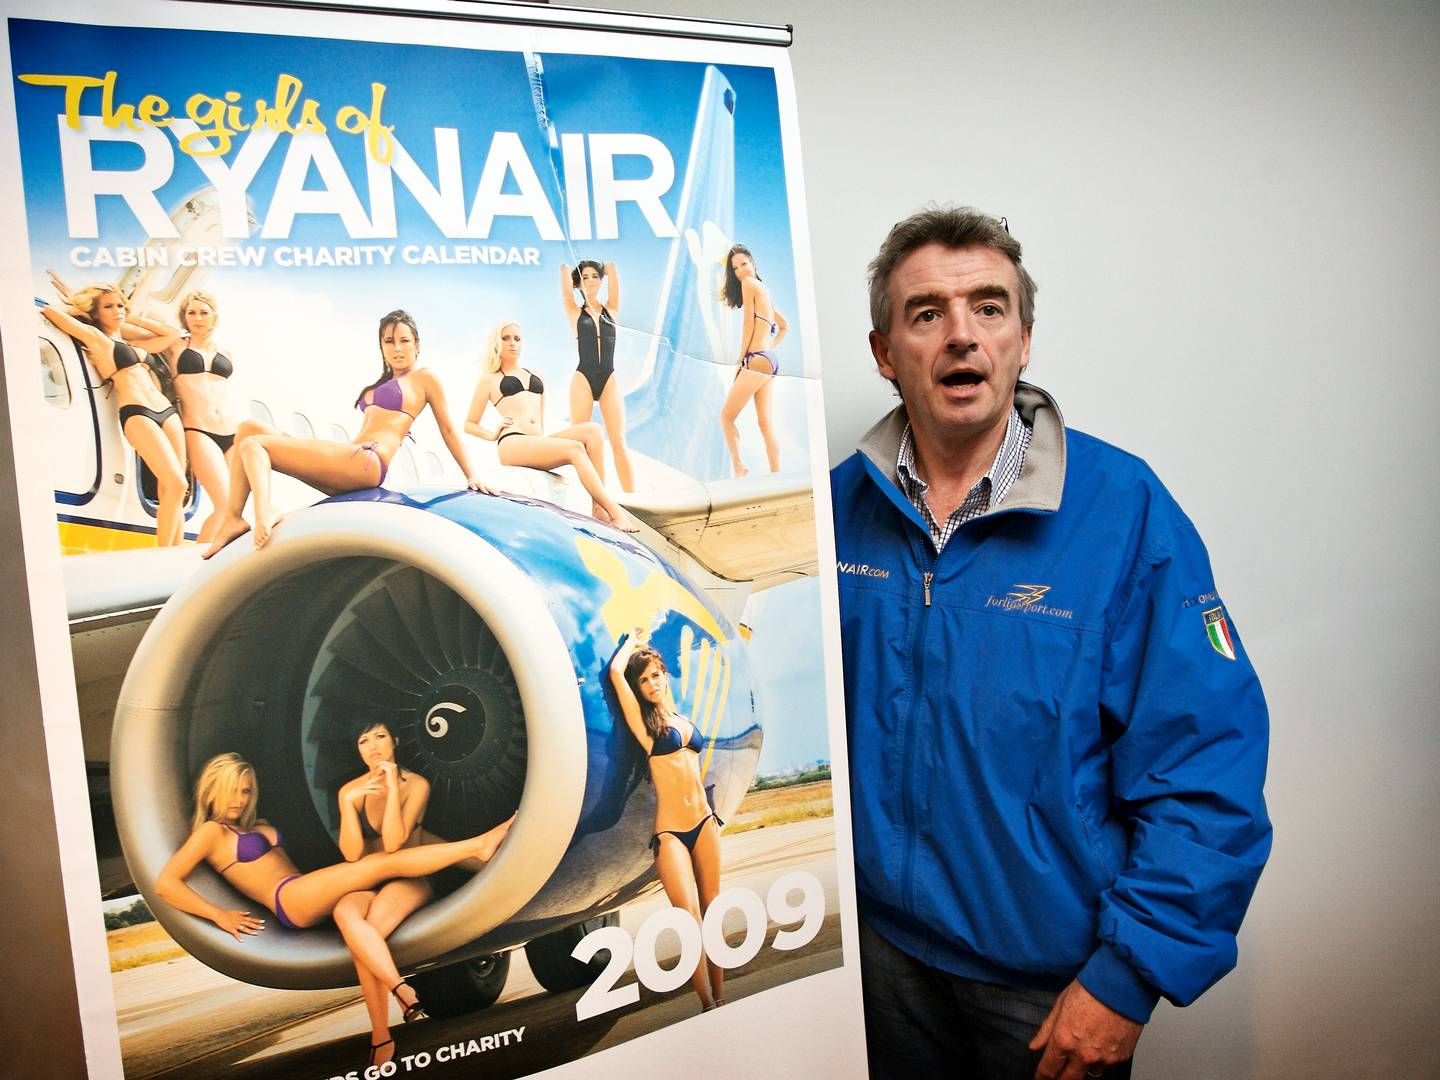 Den mangeårige Ryanair-topchef Michael O'Leary er kendt for at afholde opsigtsvækkende pressemøder og komme med kontroversielle udtalelser. | Foto: Jens Dresling/Politiken/Ritzau Scanpix